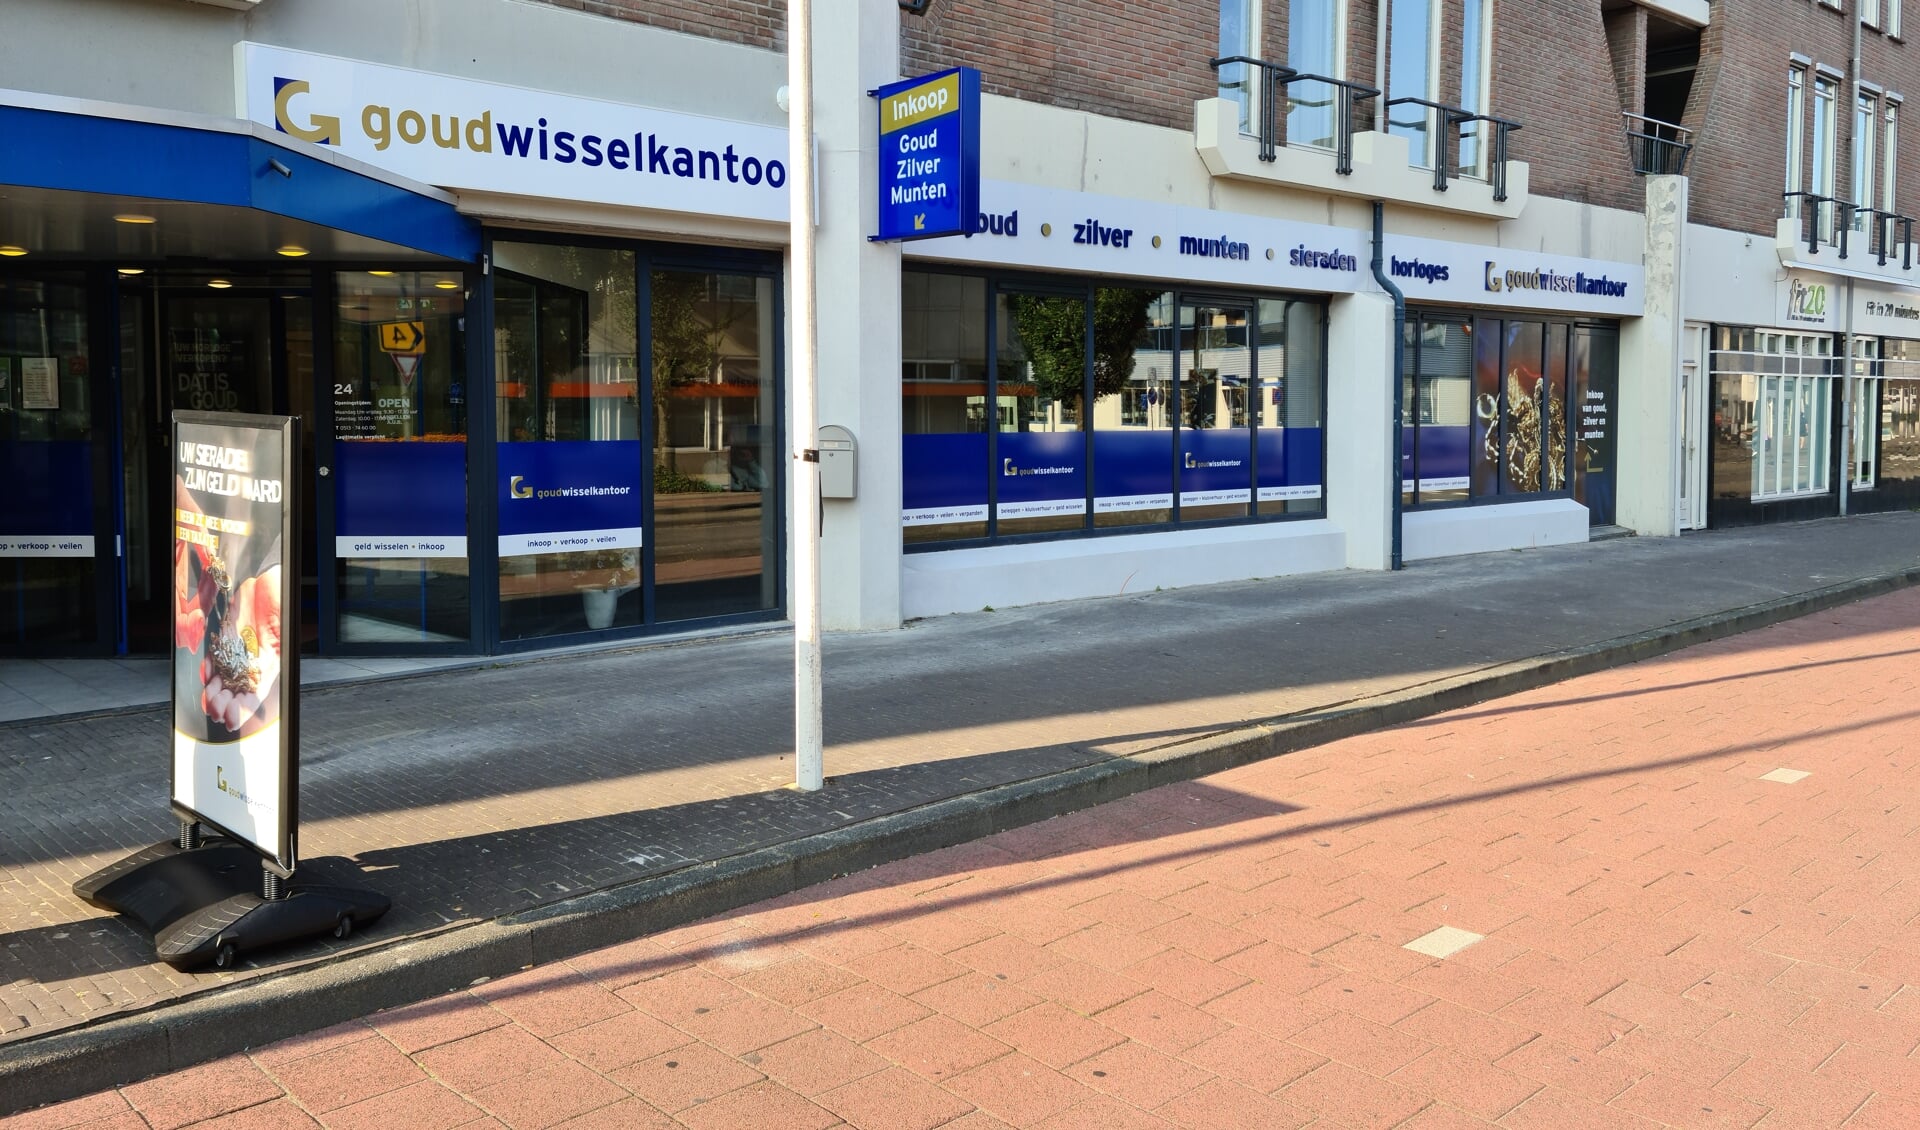 Goudwisselkantoor Heerenveen vindt u aan de Koornbeursweg 24 in Heerenveen.
